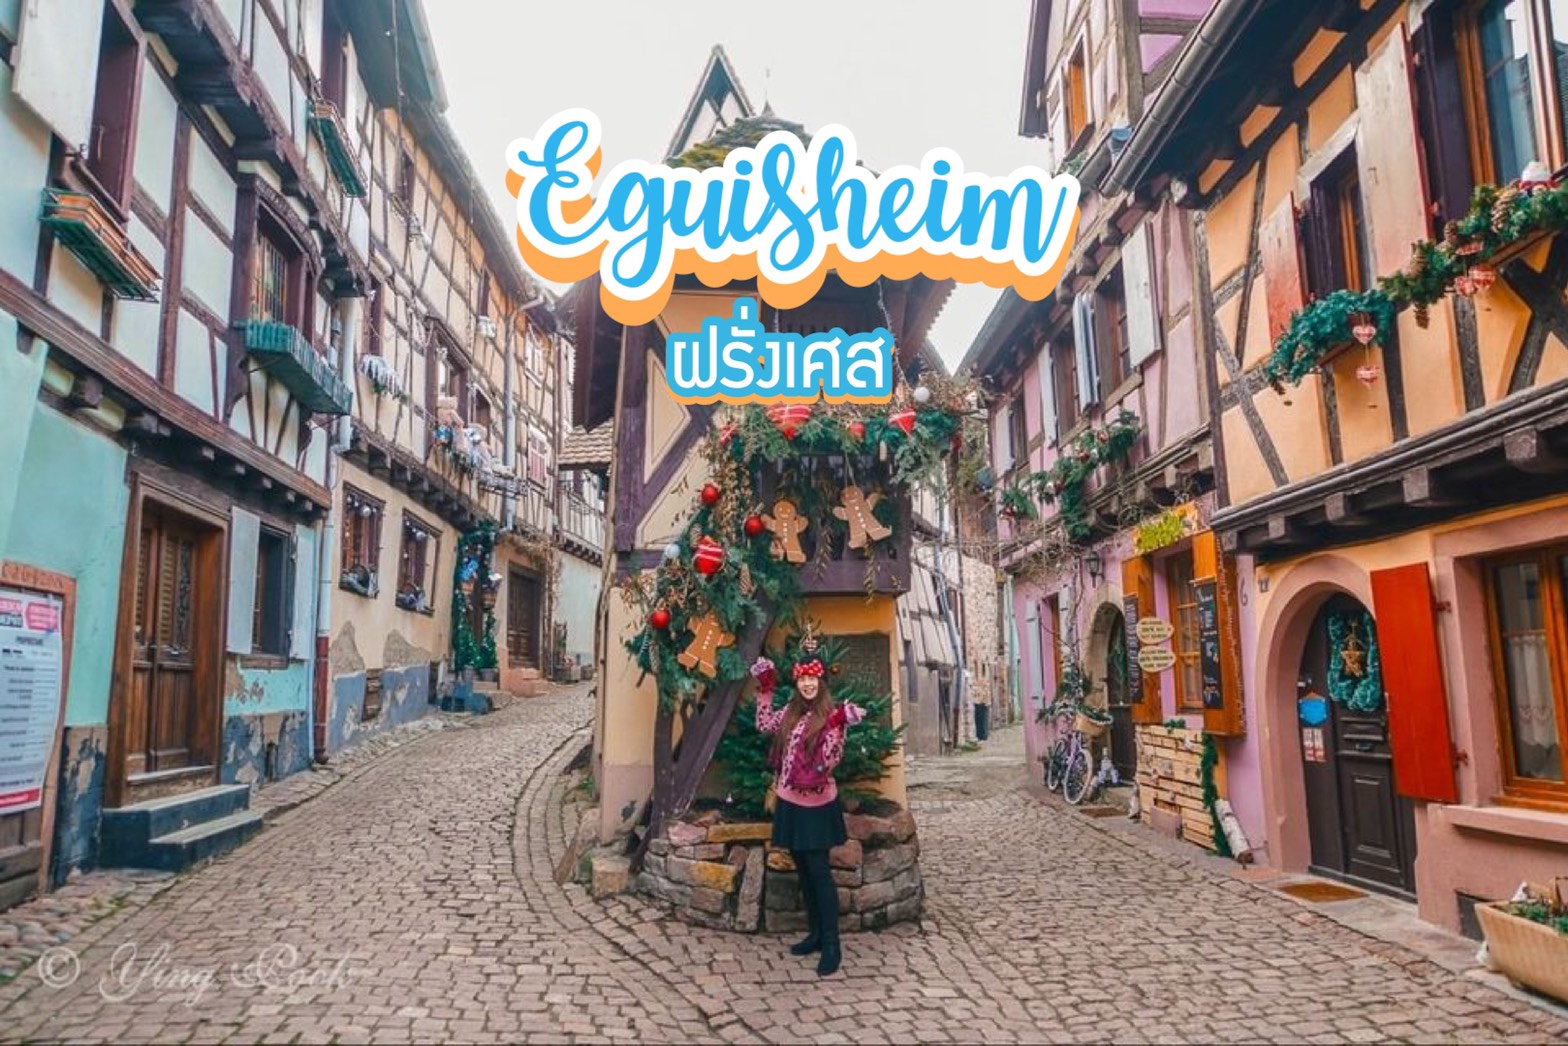 หมู่บ้านเอกีเชม Eguisheim ฝรั่งเศส